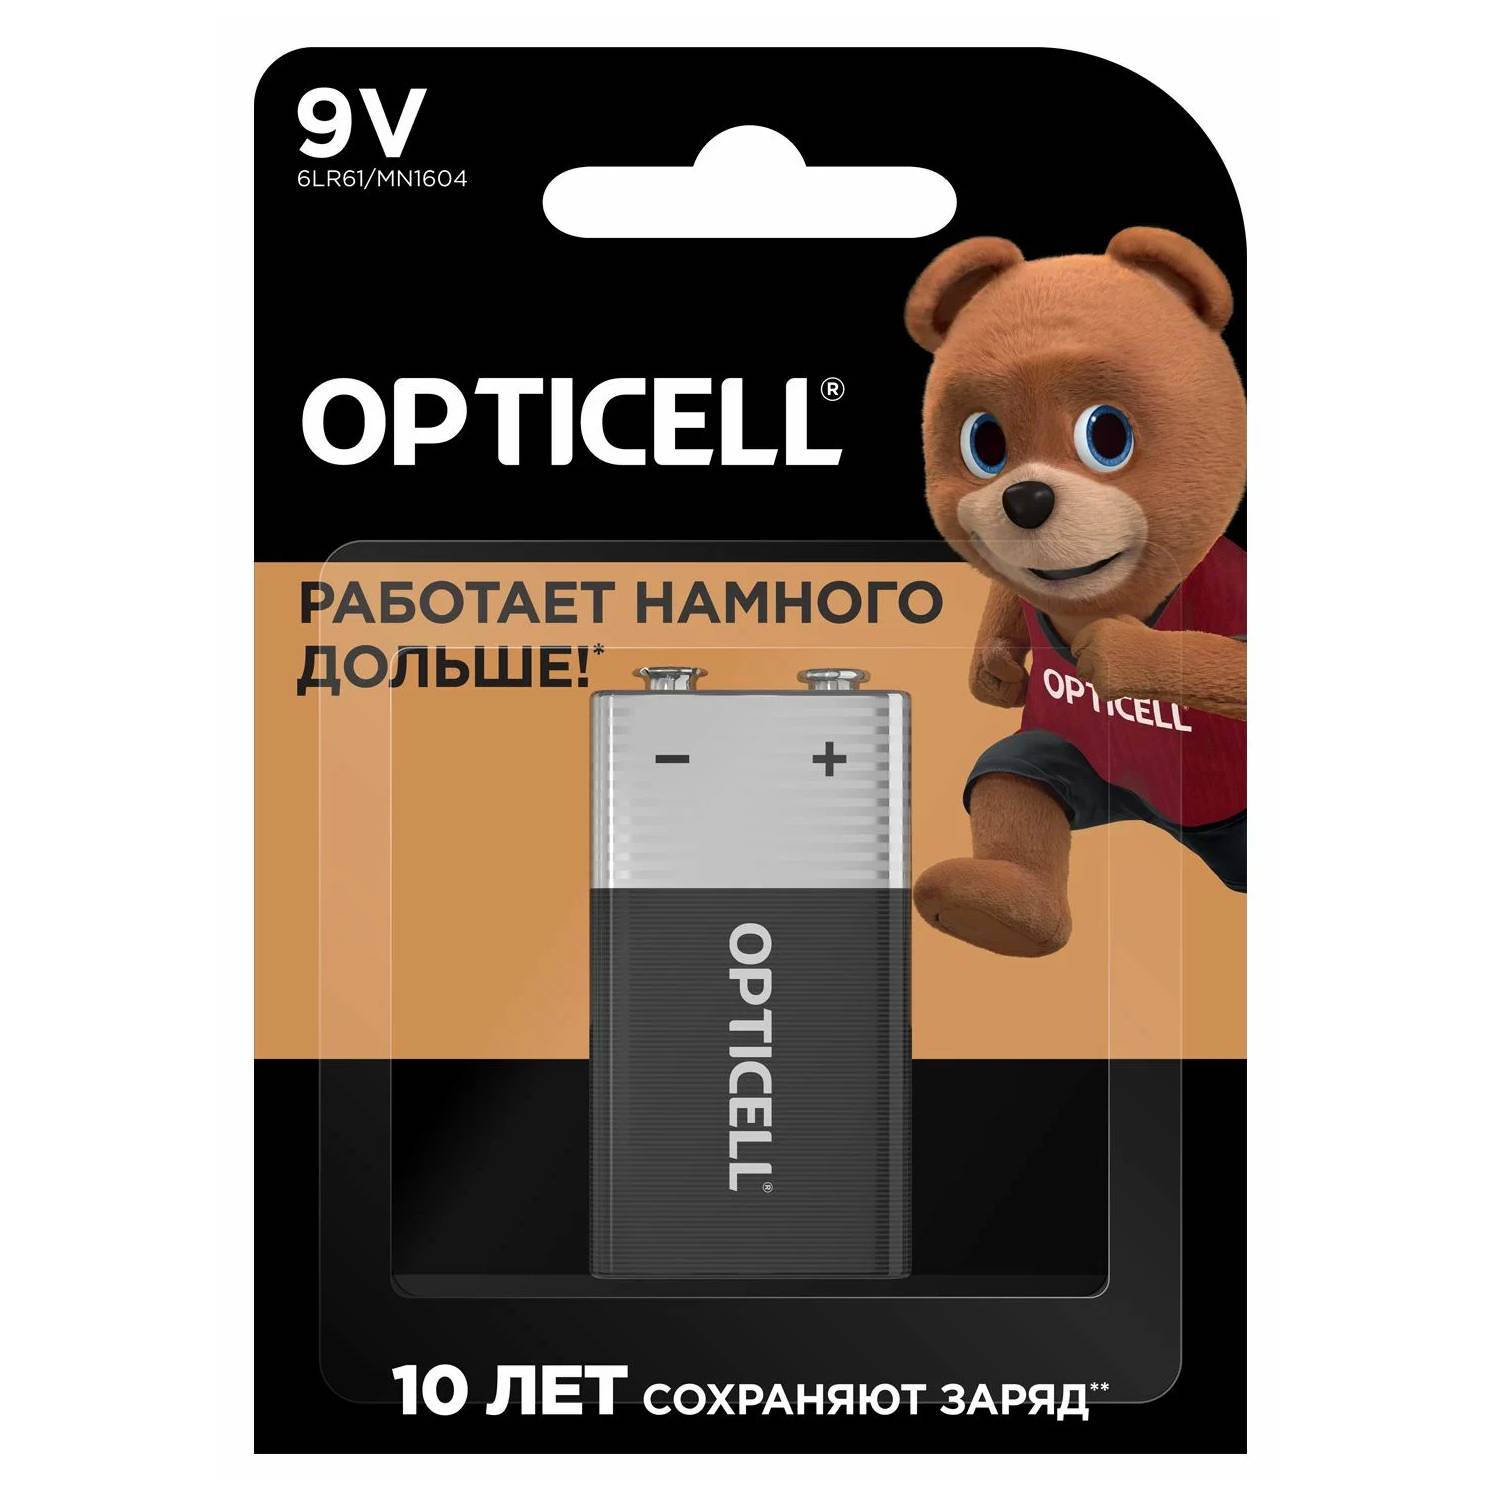 Батарейки Opticell 9V 1 шт, цвет черный, размер 9V